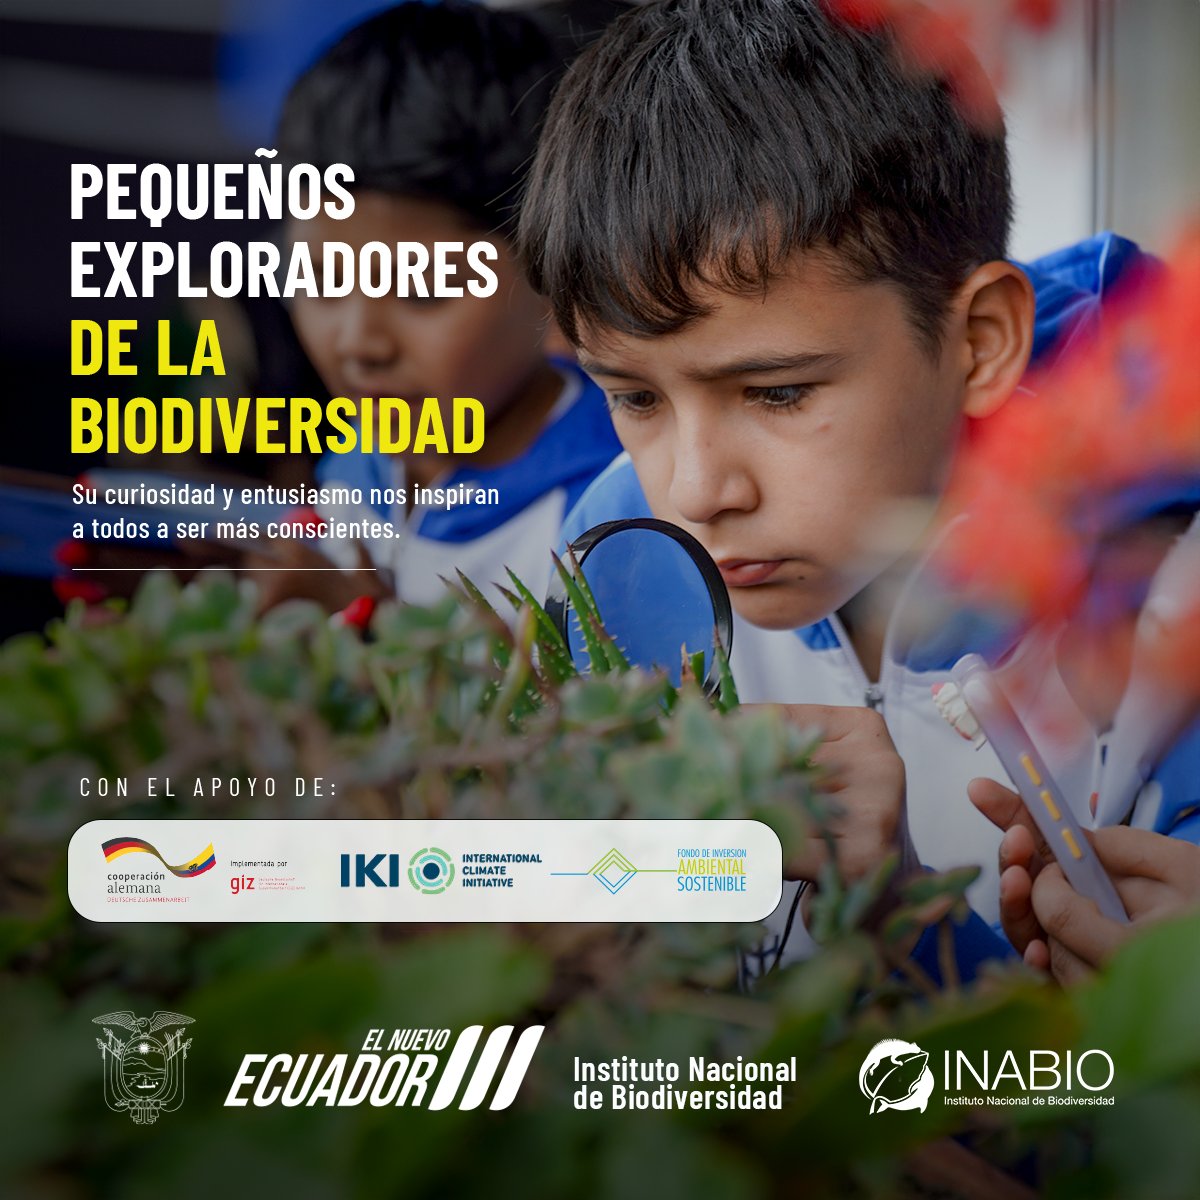 💚🔎Descubre cómo los pequeños exploradores de la biodiversidad nos muestran la importancia de observar y proteger nuestro entorno natural.
🦎🐝🦋🐞🐛🌿🍄🪰🐤🕸️🌷
#ElNuevoEcuador
#INABIO
#CienciaCiudadana